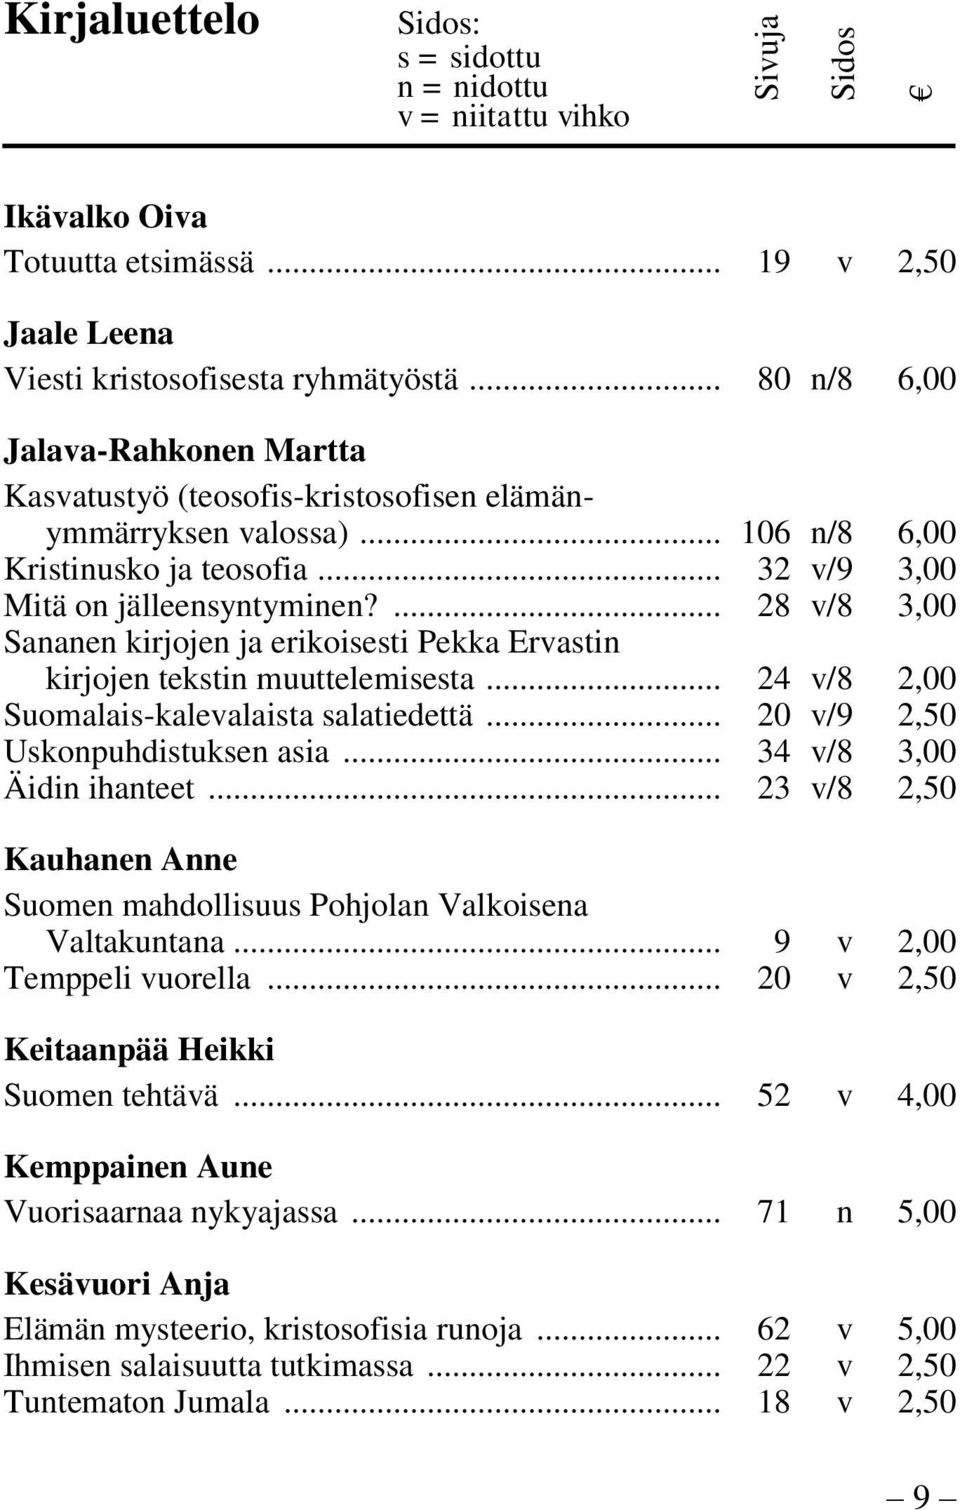 .. 24 v/8 2,00 Suomalais-kalevalaista salatiedettä... 20 v/9 2,50 Uskonpuhdistuksen asia... 34 v/8 3,00 Äidin ihanteet... 23 v/8 2,50 Kauhanen Anne Suomen mahdollisuus Pohjolan Valkoisena Valtakuntana.